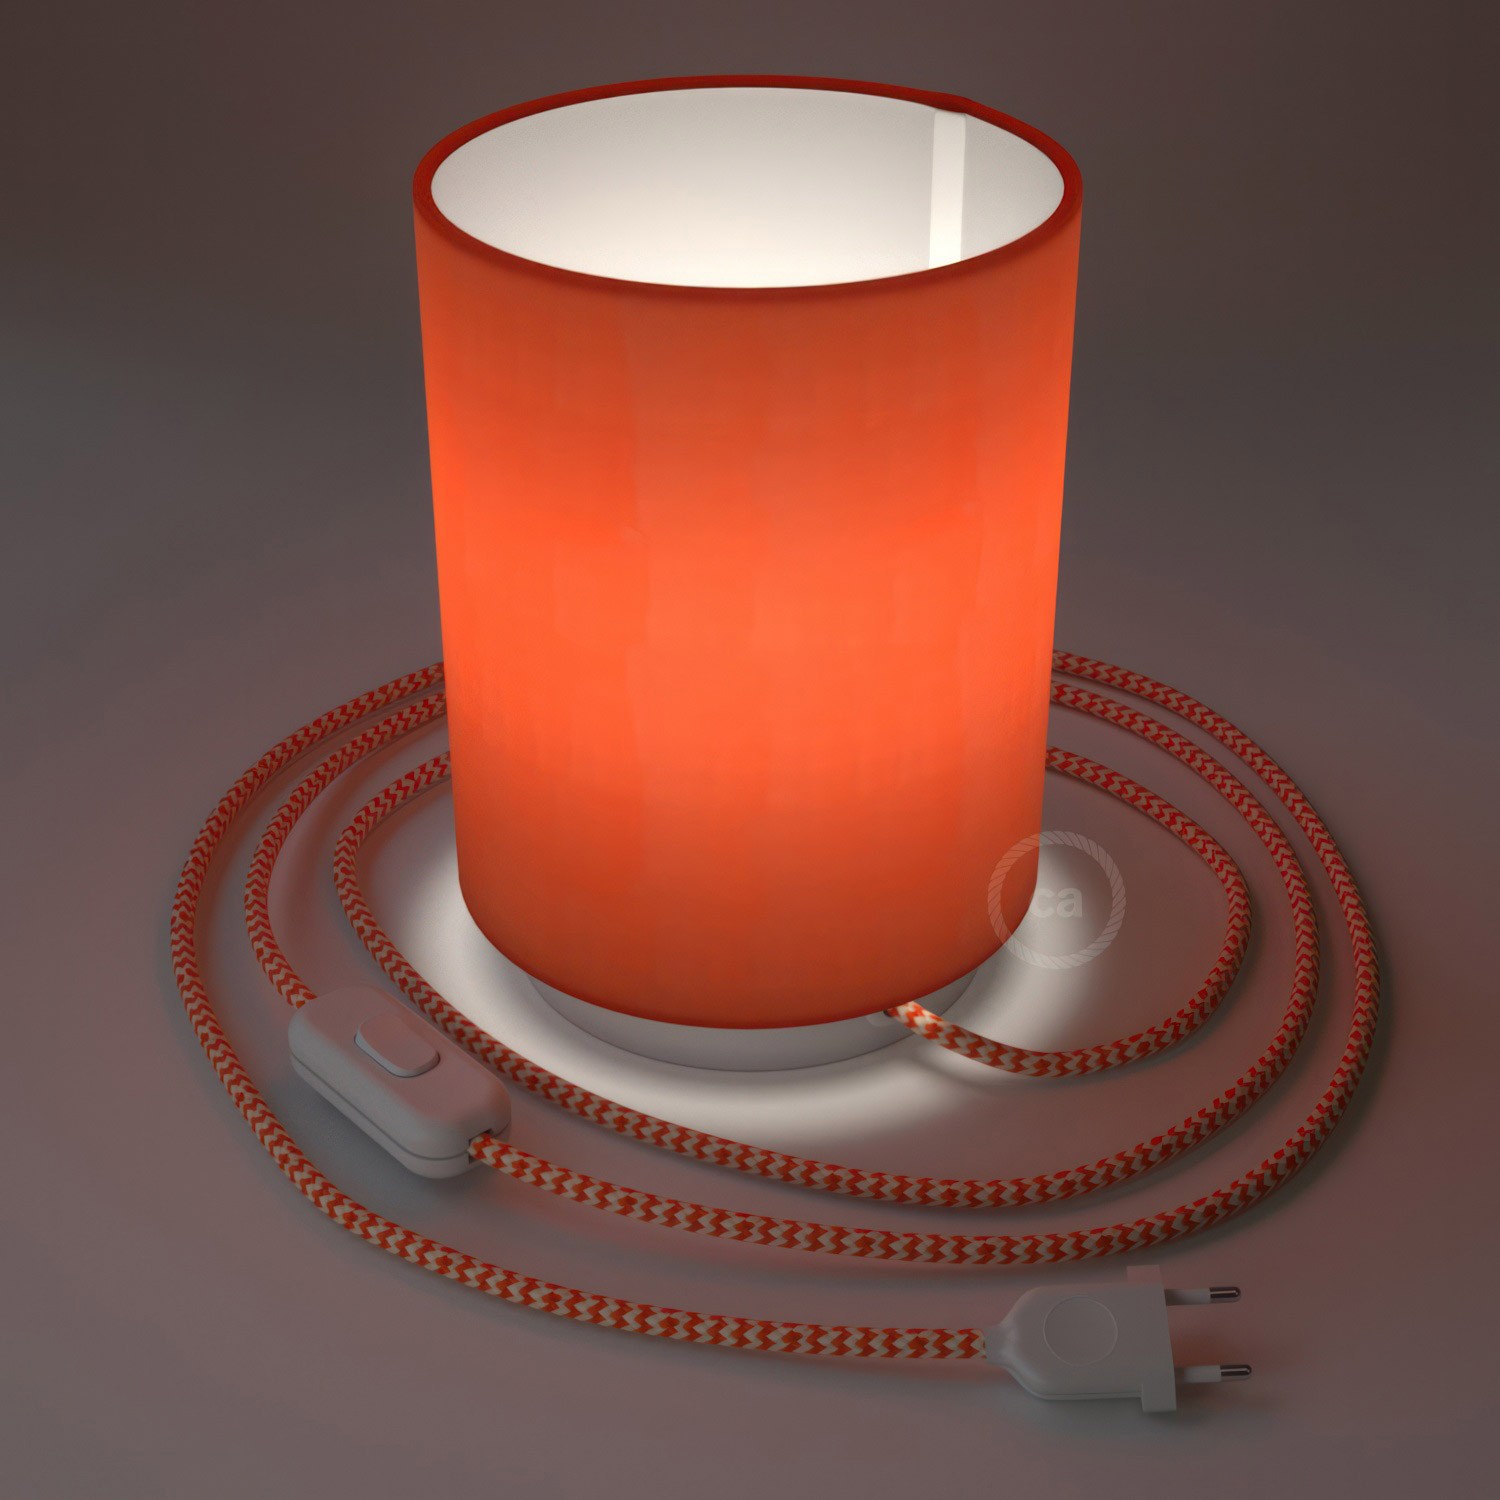 Posaluce i metall med Cilindro Terrakotta lampskärm, komplett med textilkabel, sladdströmbrytare och 2-polig stickpropp.